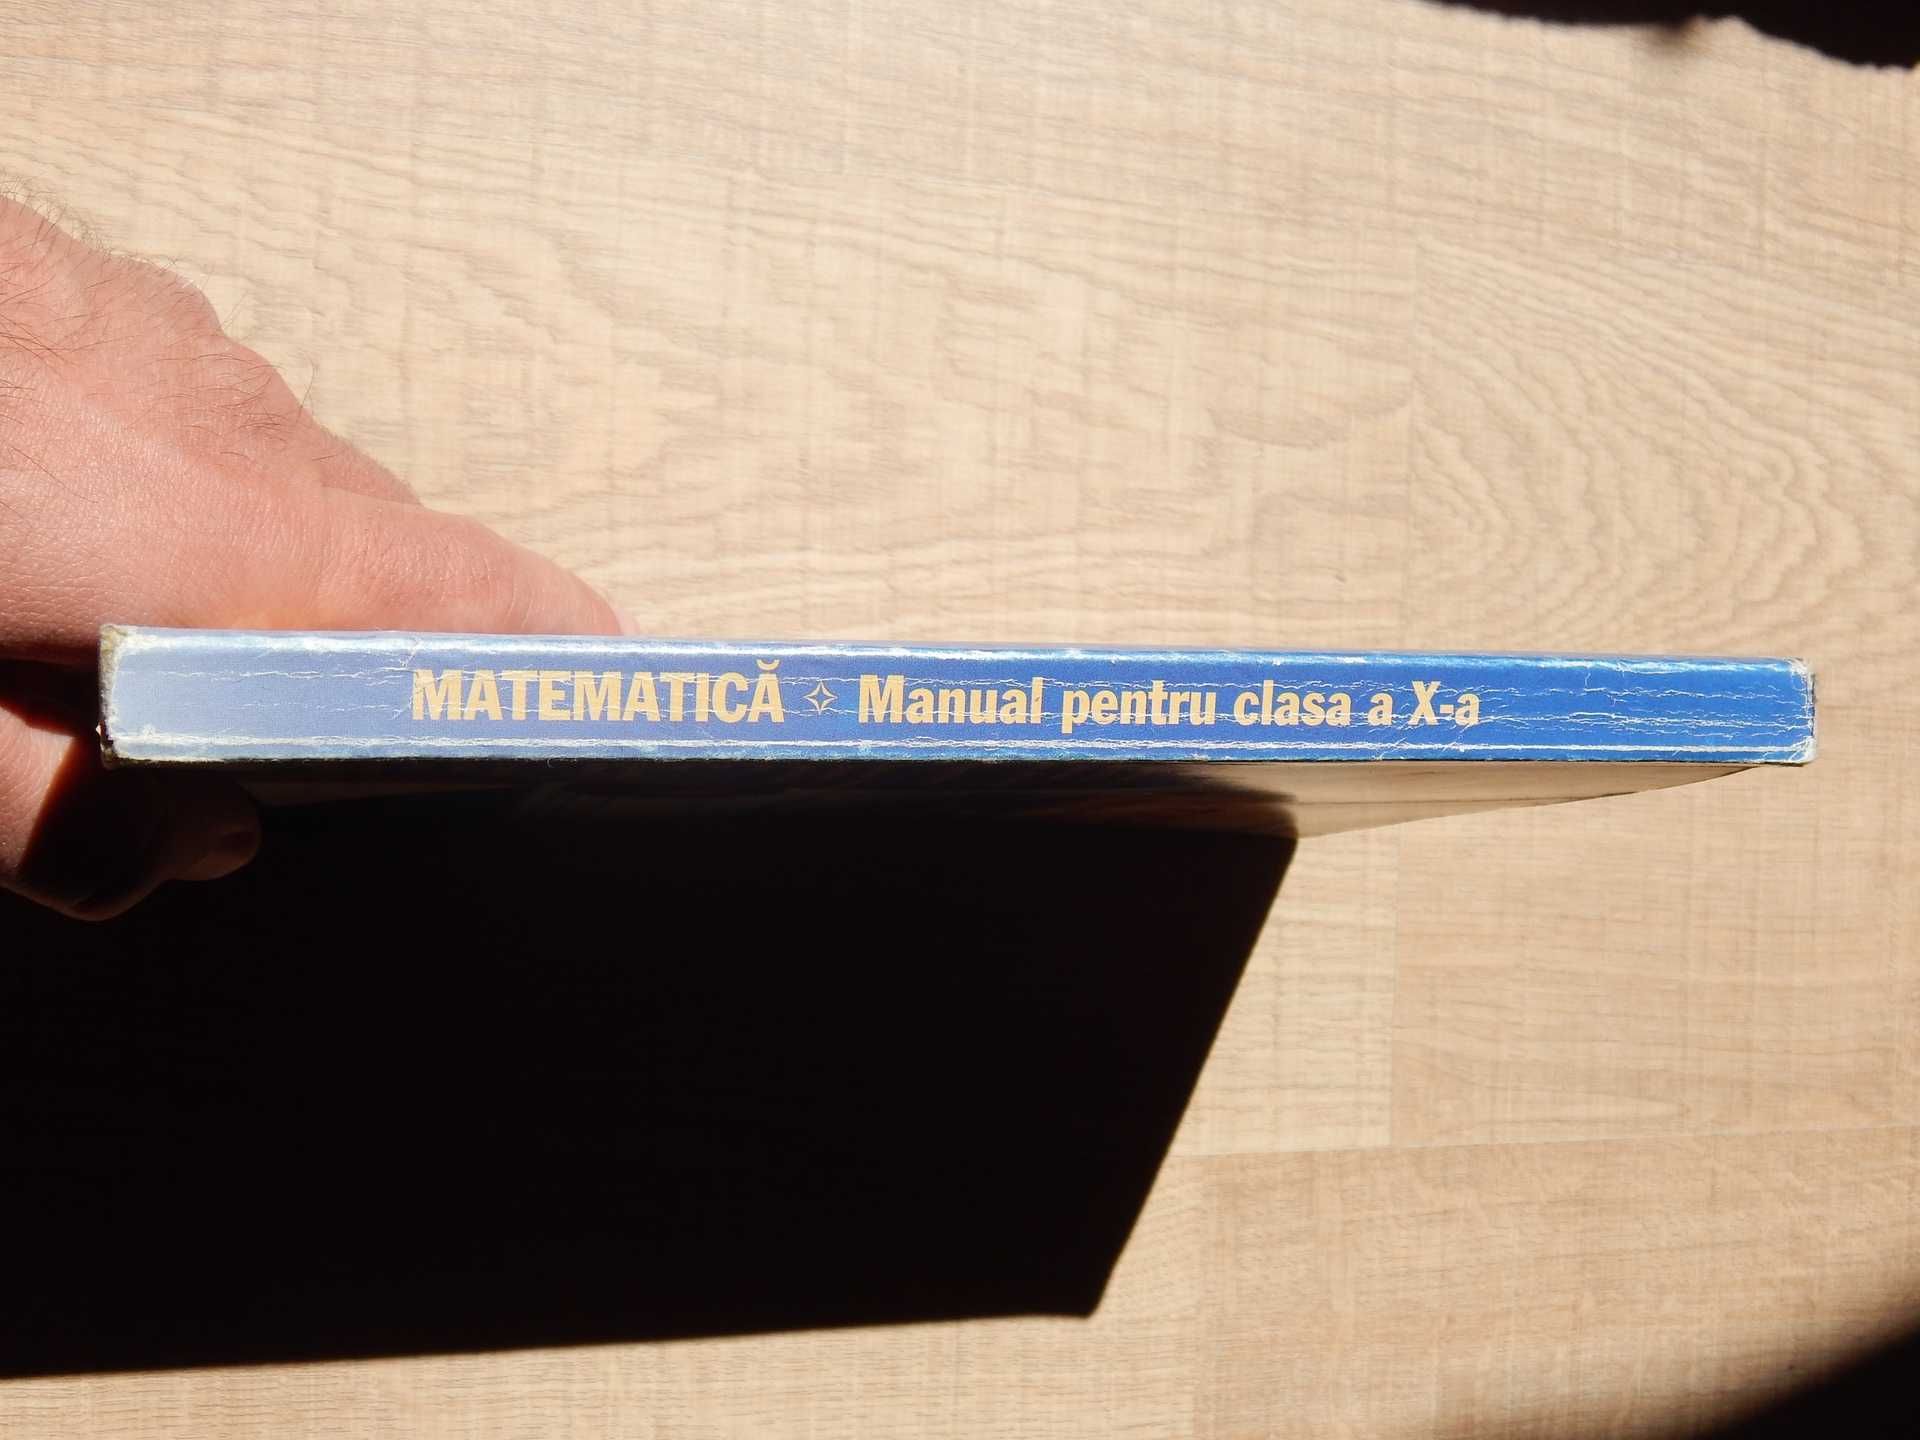 Manual matematica clasa X Chites Constantinescu Singer Sigma 2003